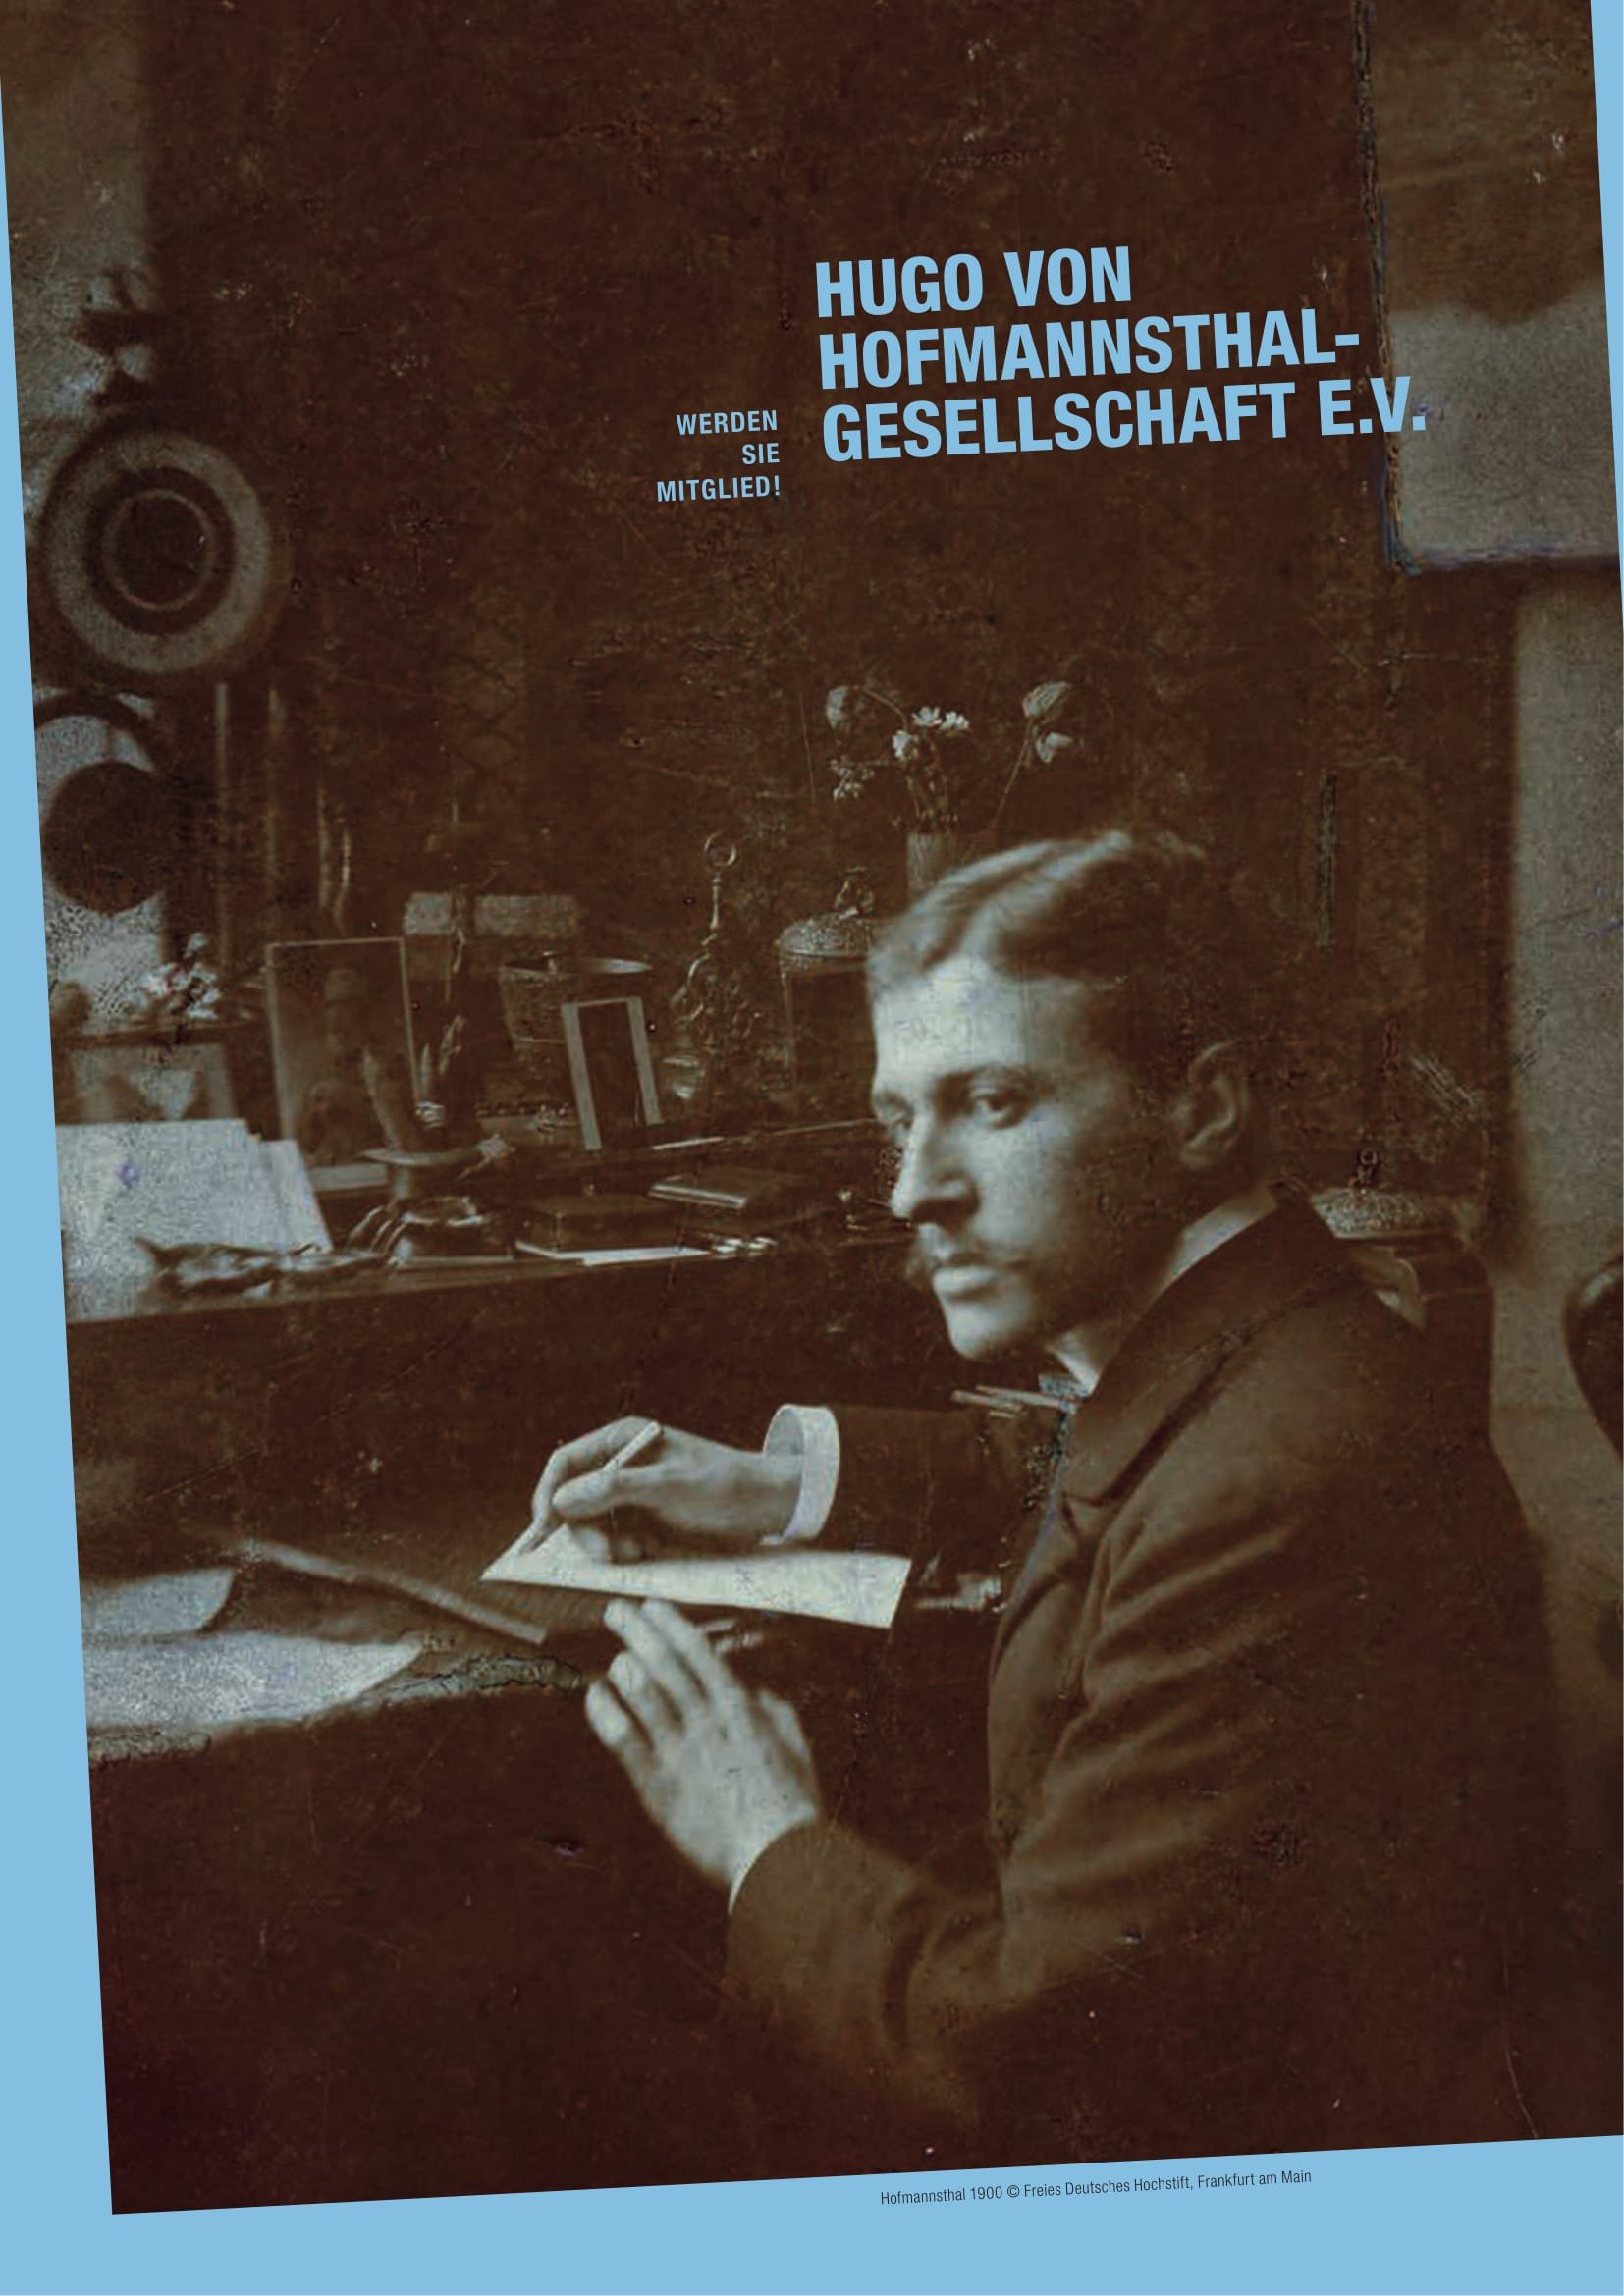 Wir fördern (durch Tagungen und Publikationen) die Auseinandersetzung mit Leben und Werk des österreichischen Schriftstellers Hugo von Hofmannsthal (1874-1929).